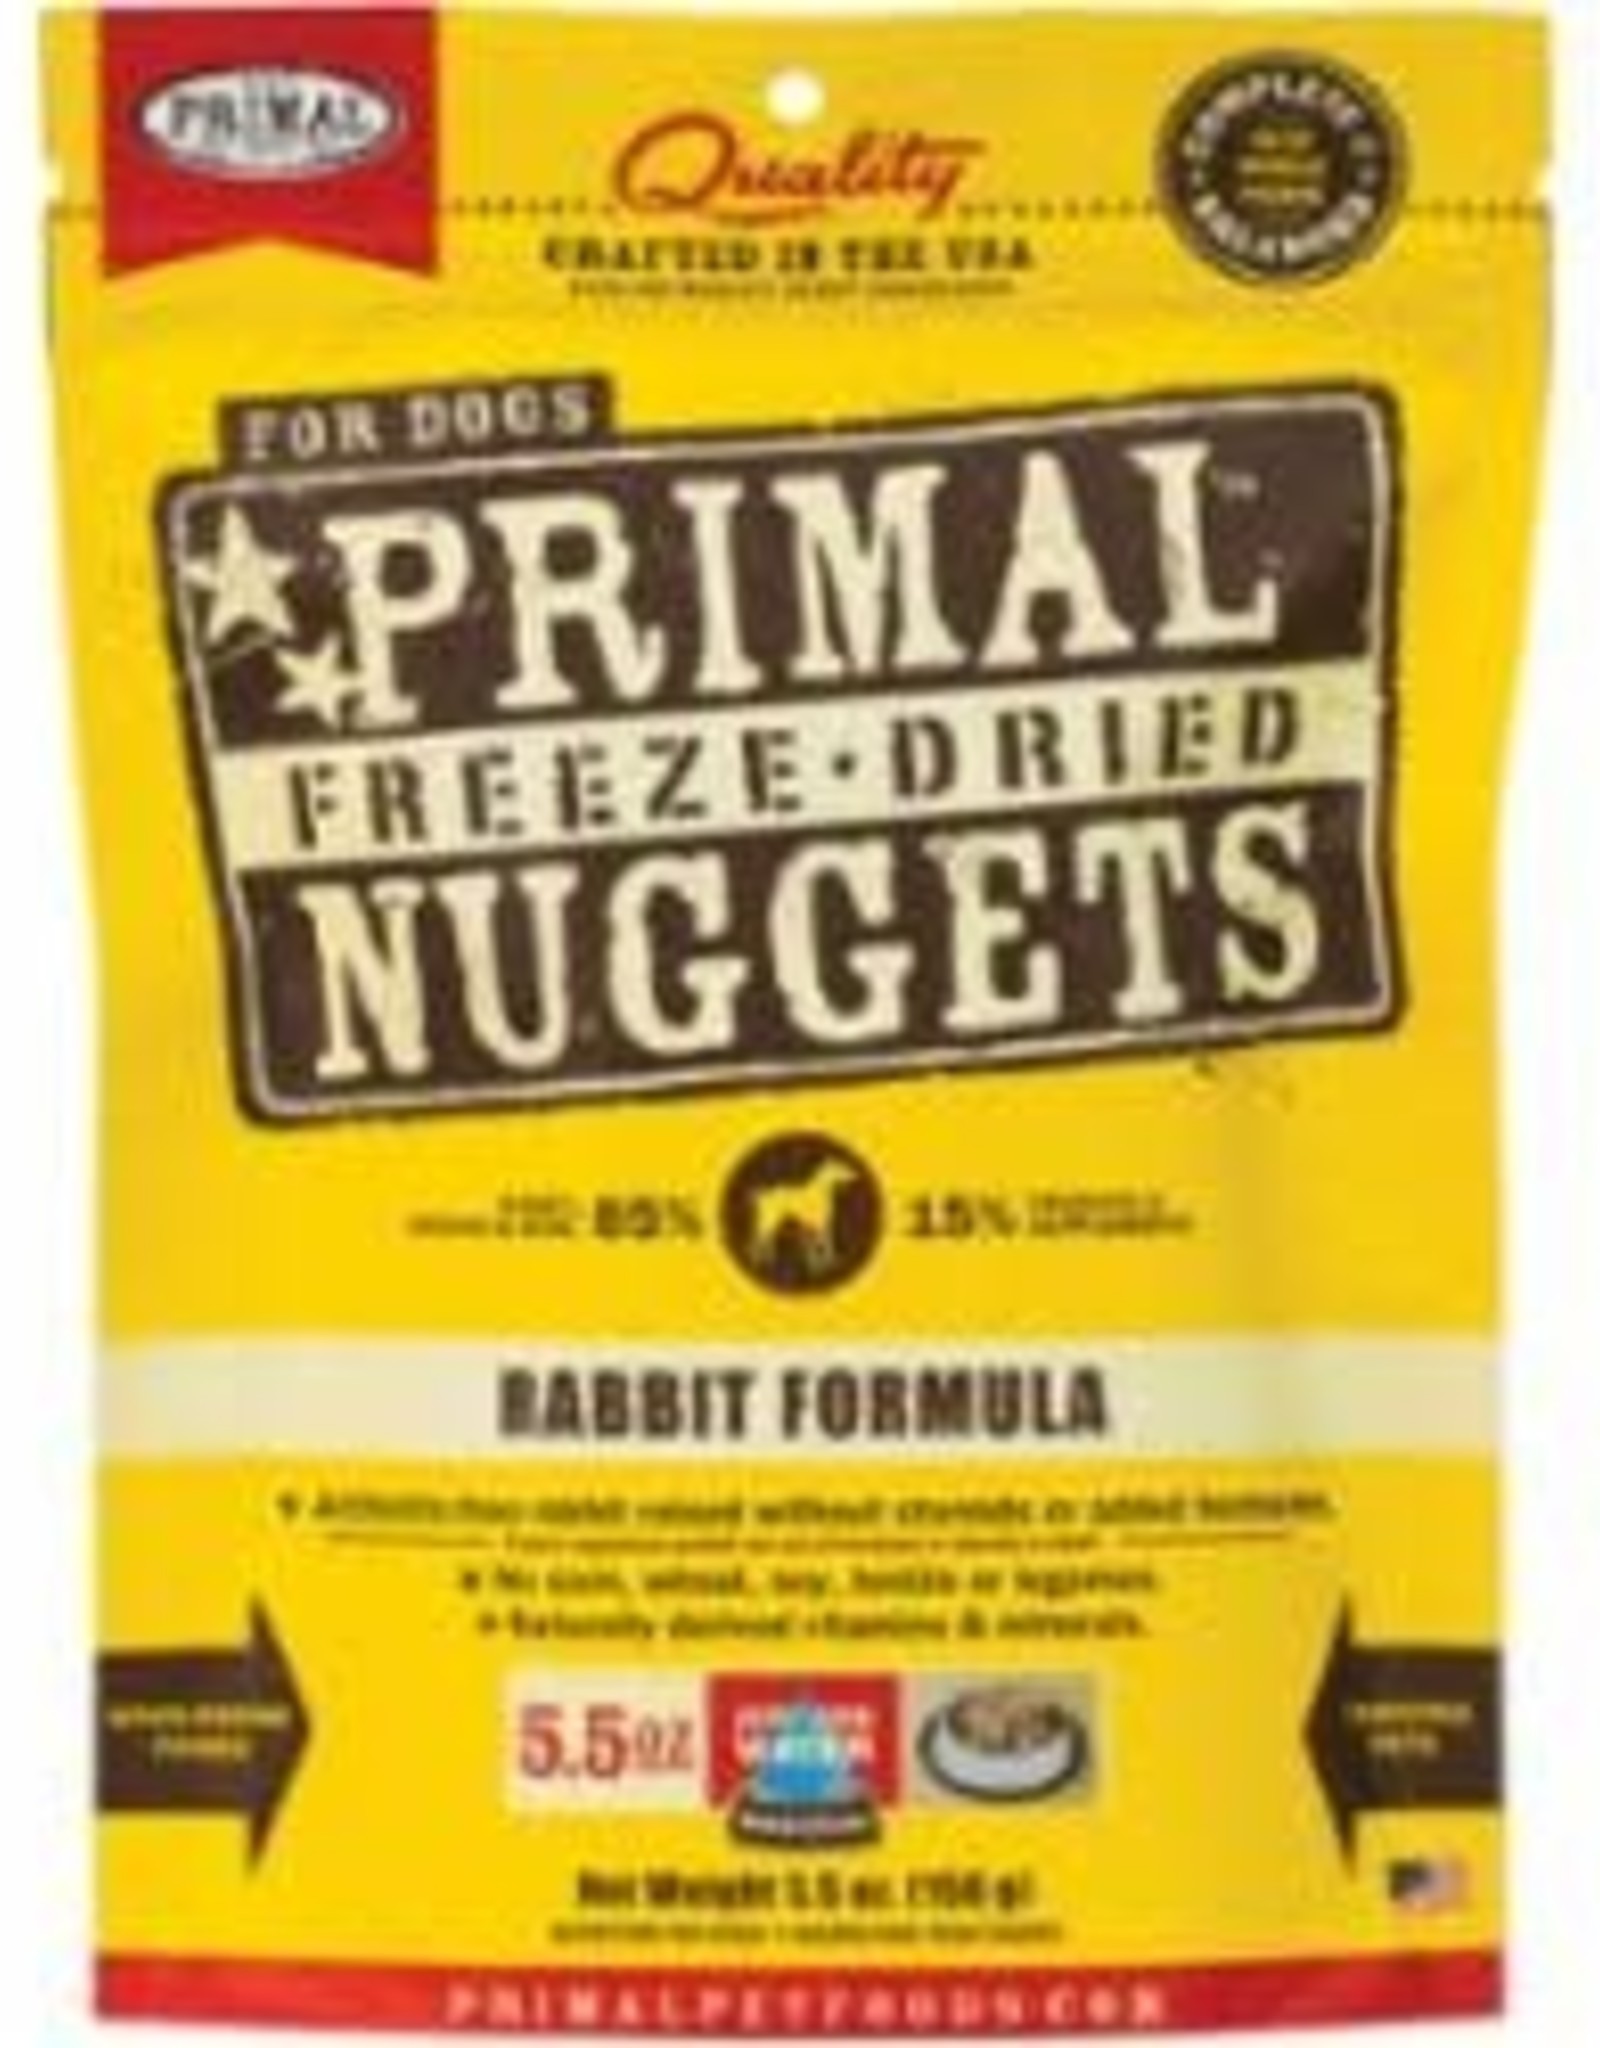 Primal Primal Freeze-Dried Nuggets Rabbit Formula Dog Food 5.5oz